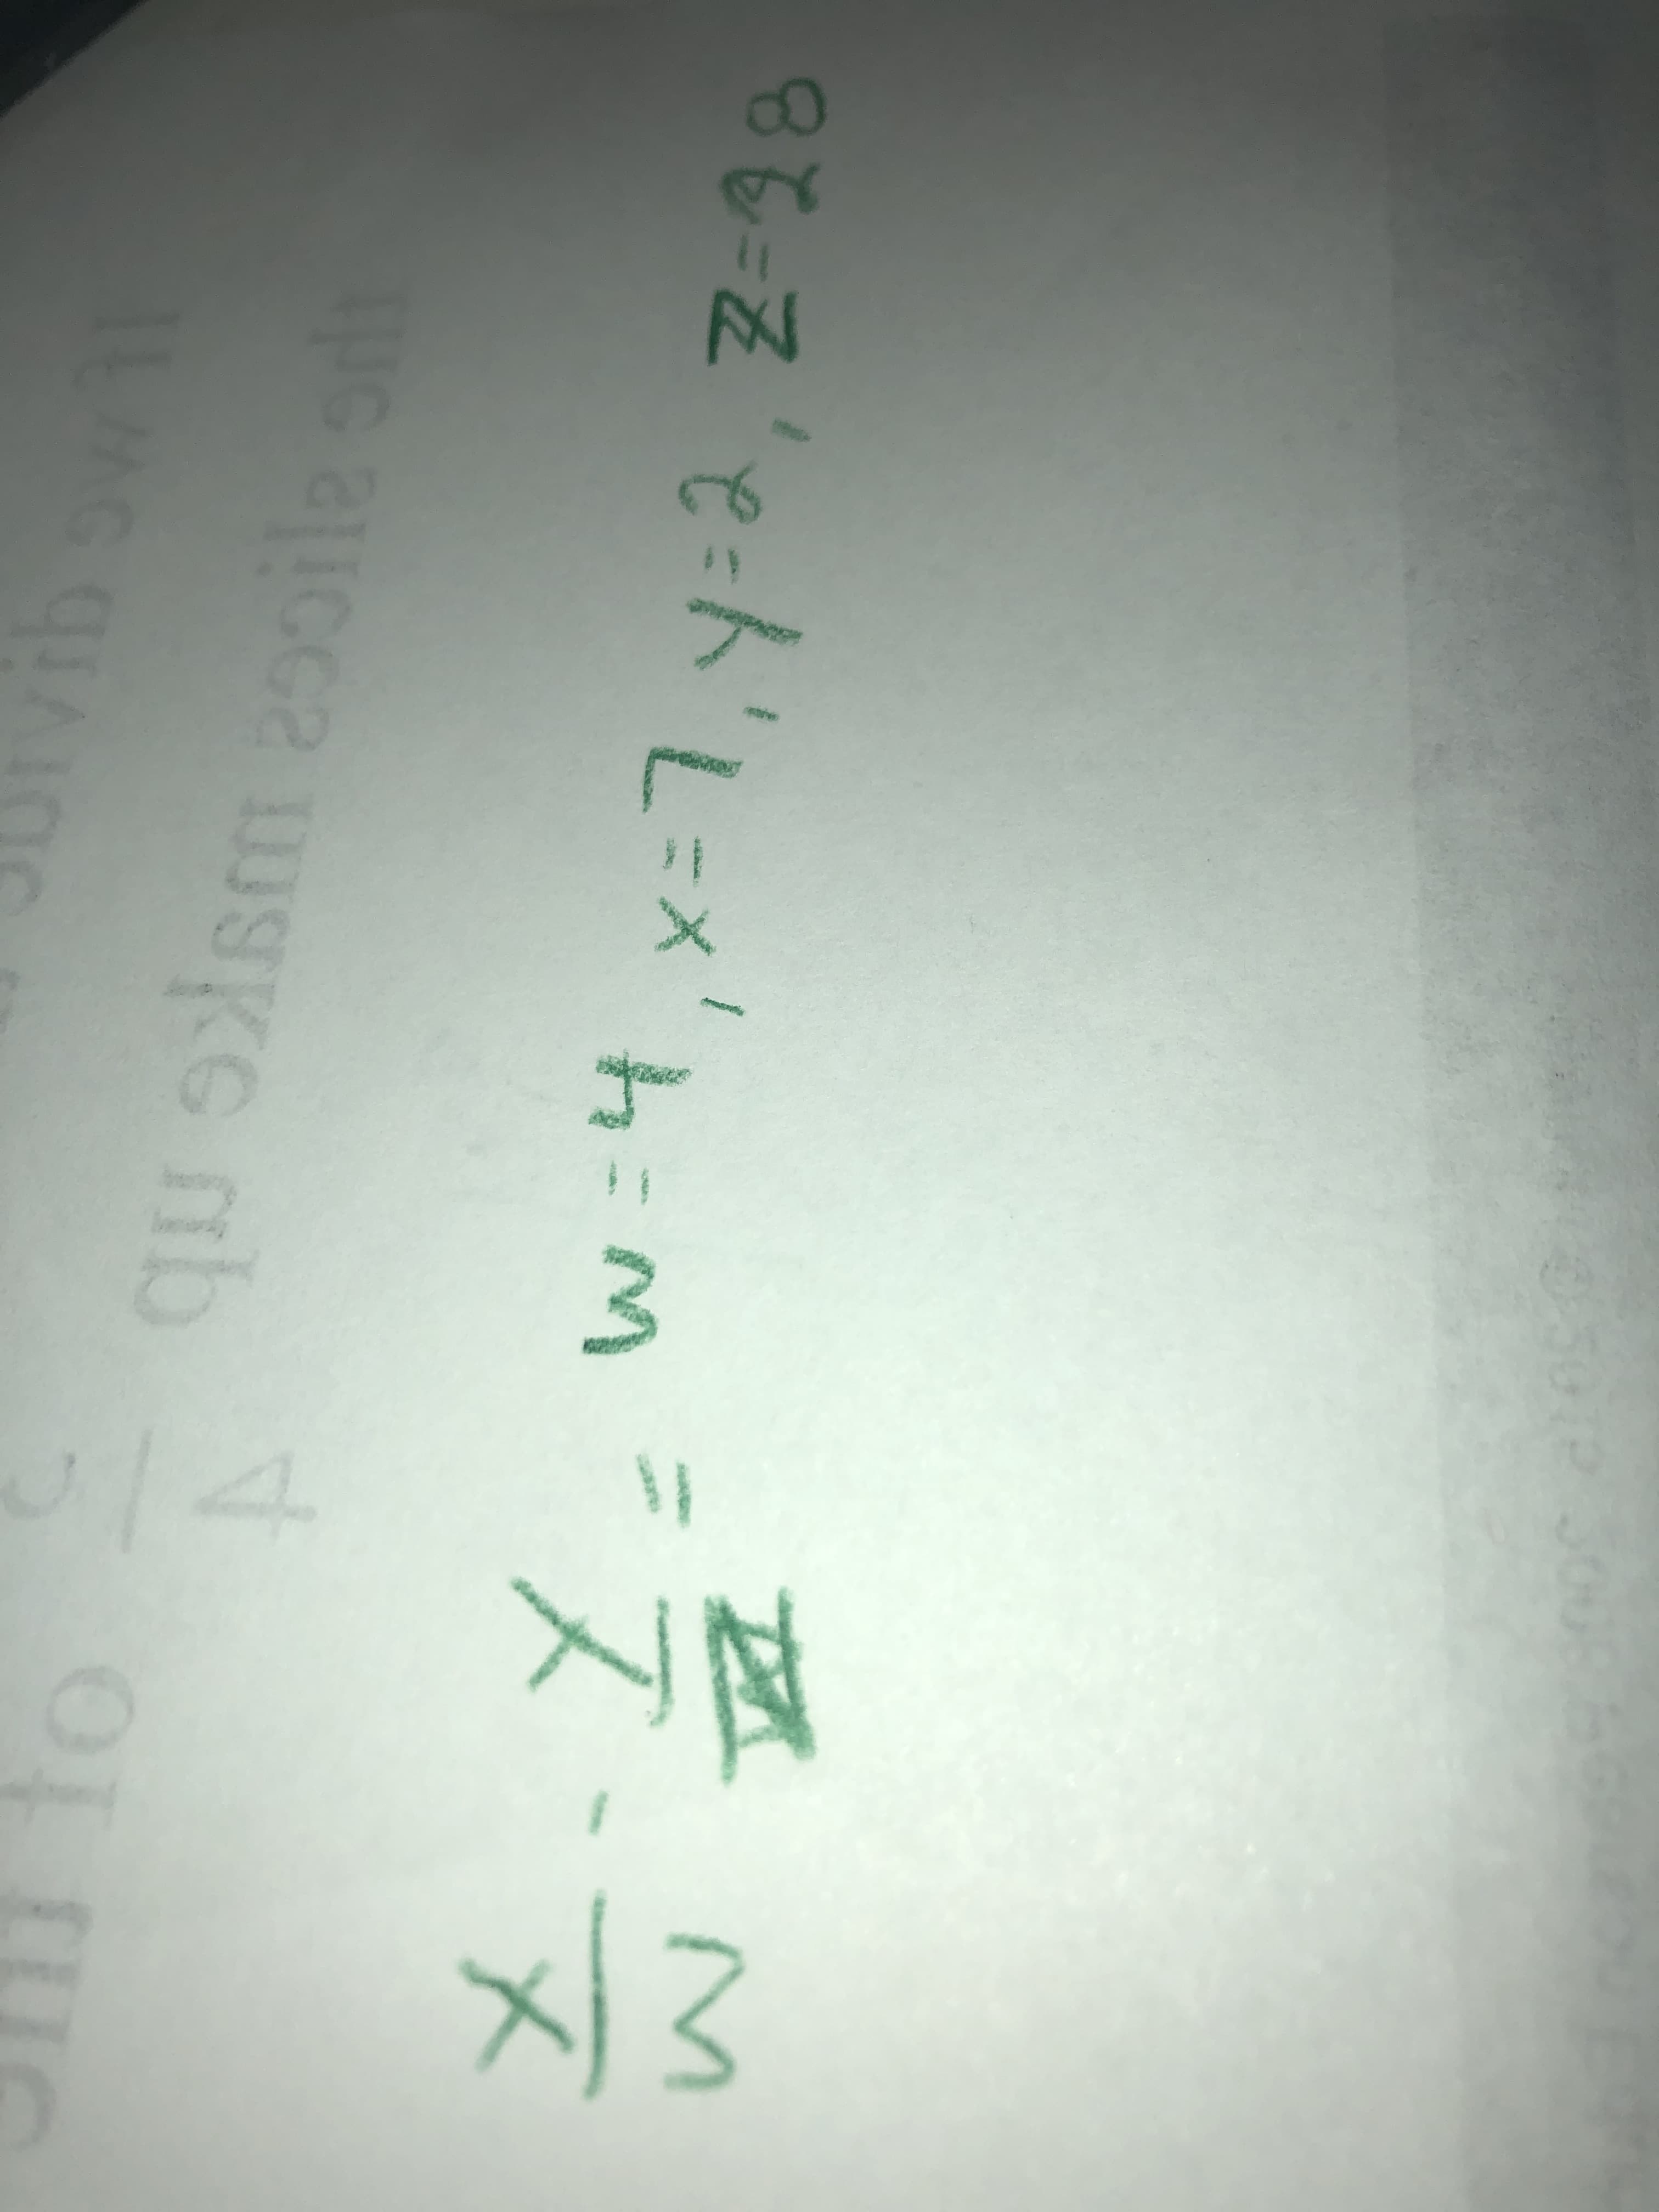 e-Ze-ト'L=x'h:m=スス
w=4
y=2,Z-28
3D1
SKC
